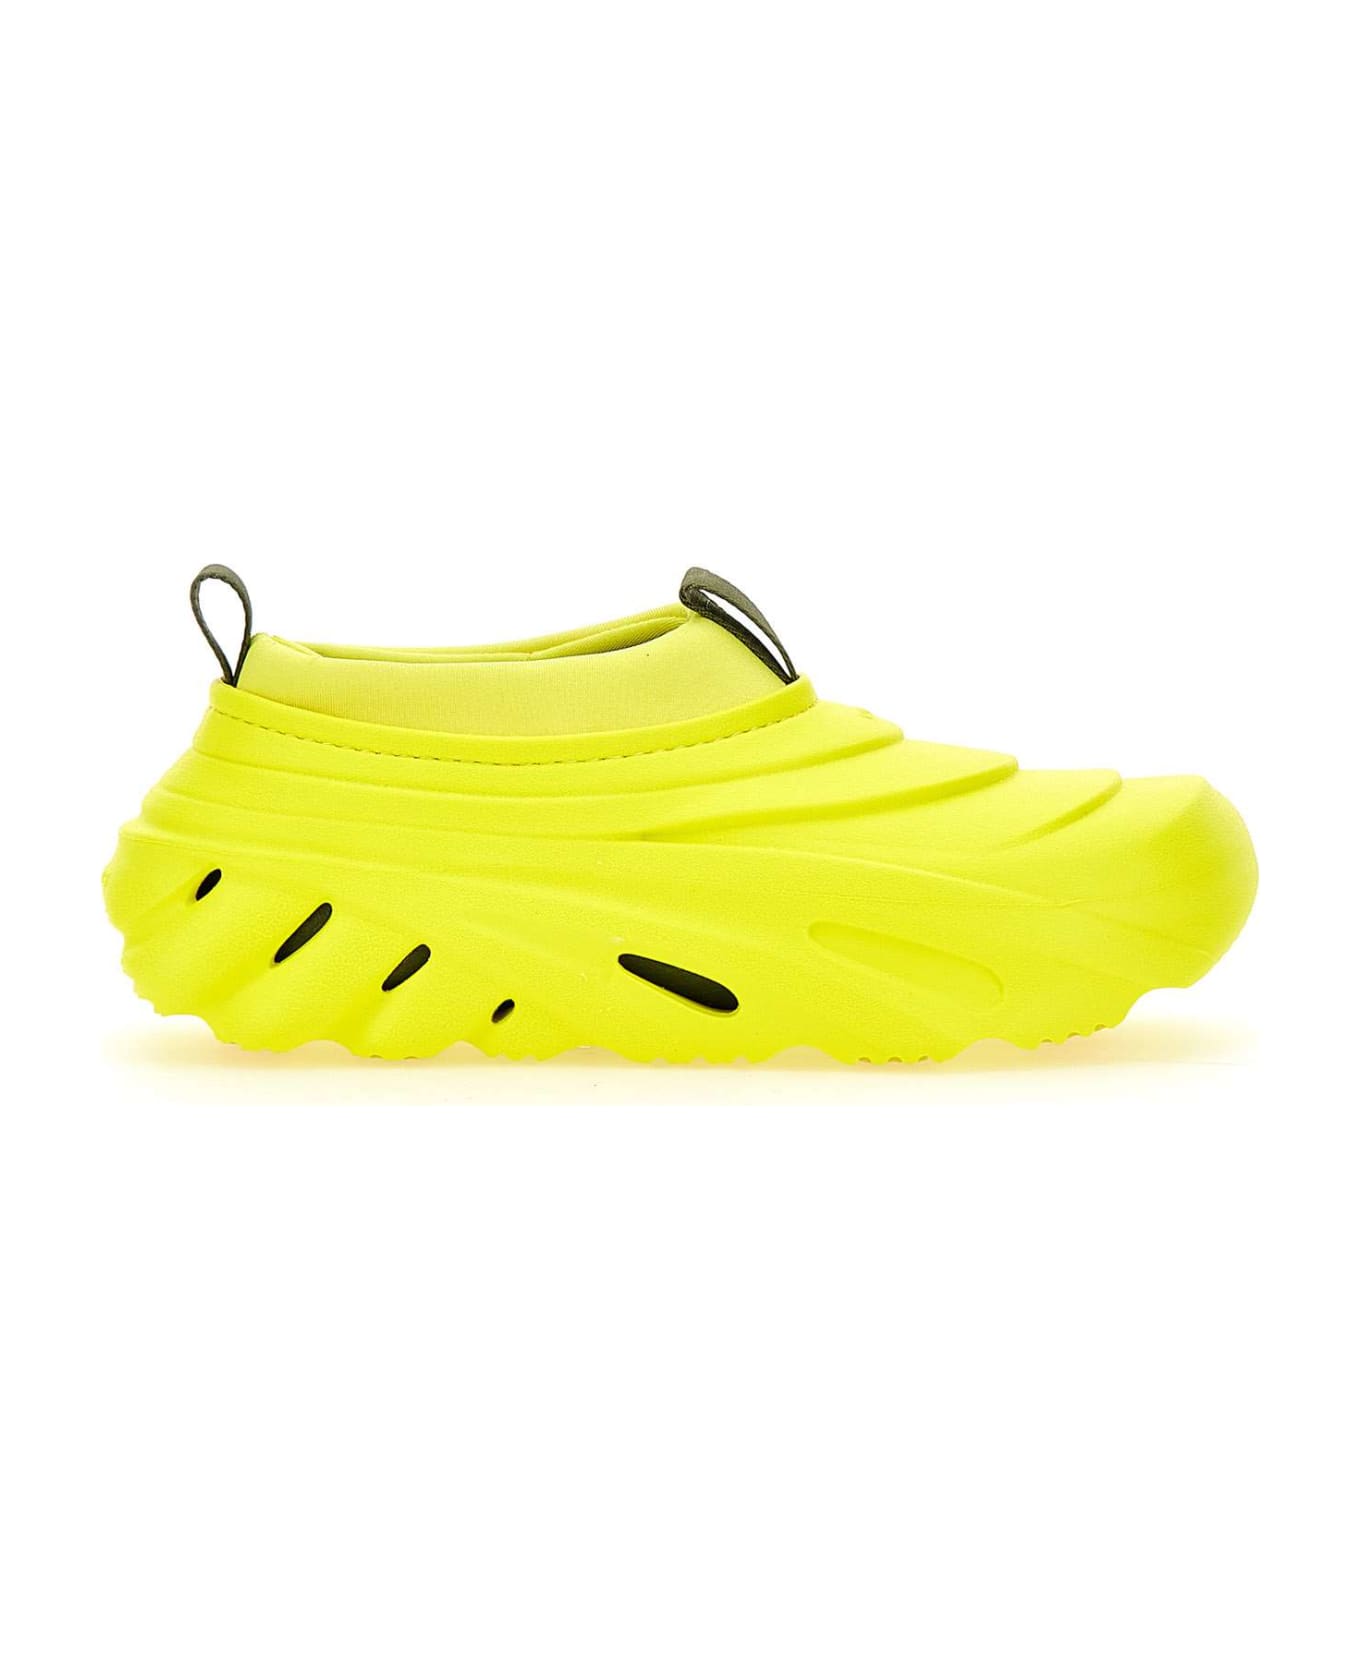 Crocs "echo Storm" Sneakers - YELLOW スニーカー